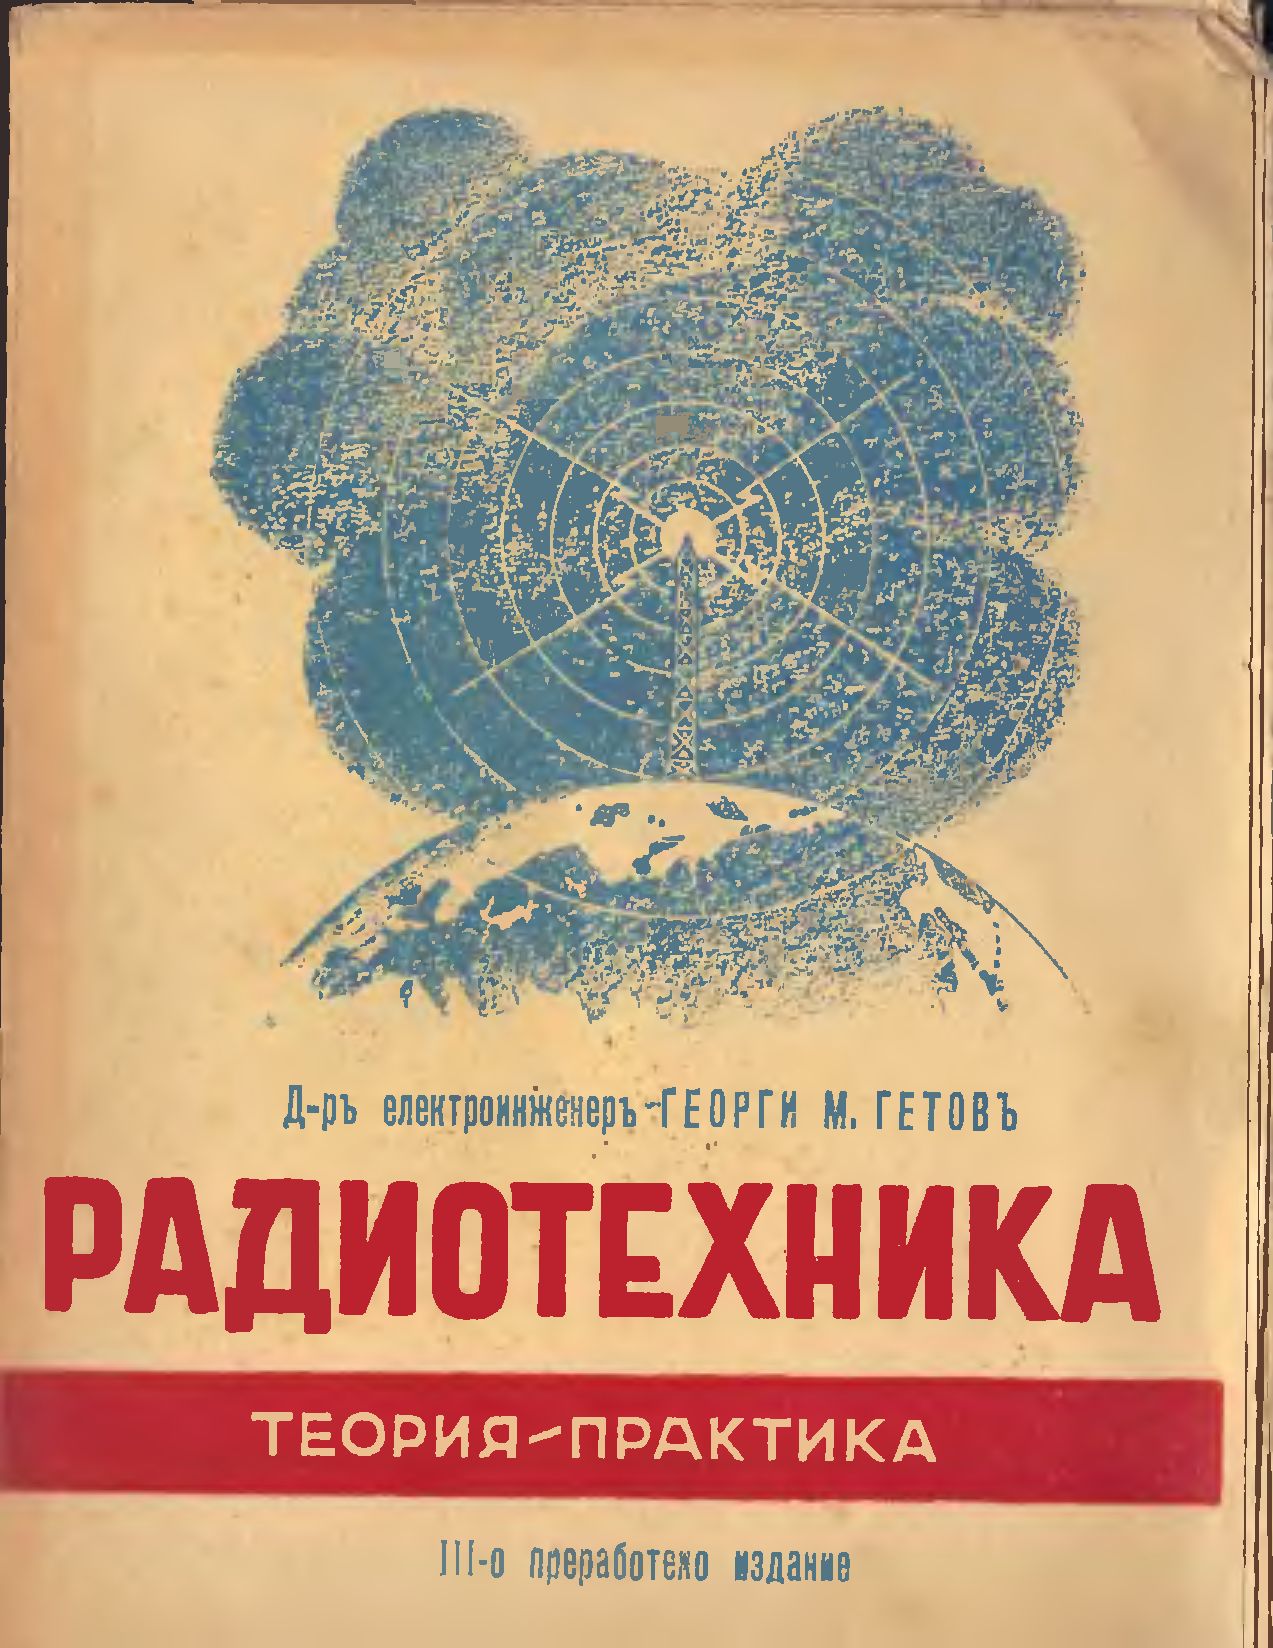 [1943] Нова книга Георги Гетов - Радиотехника